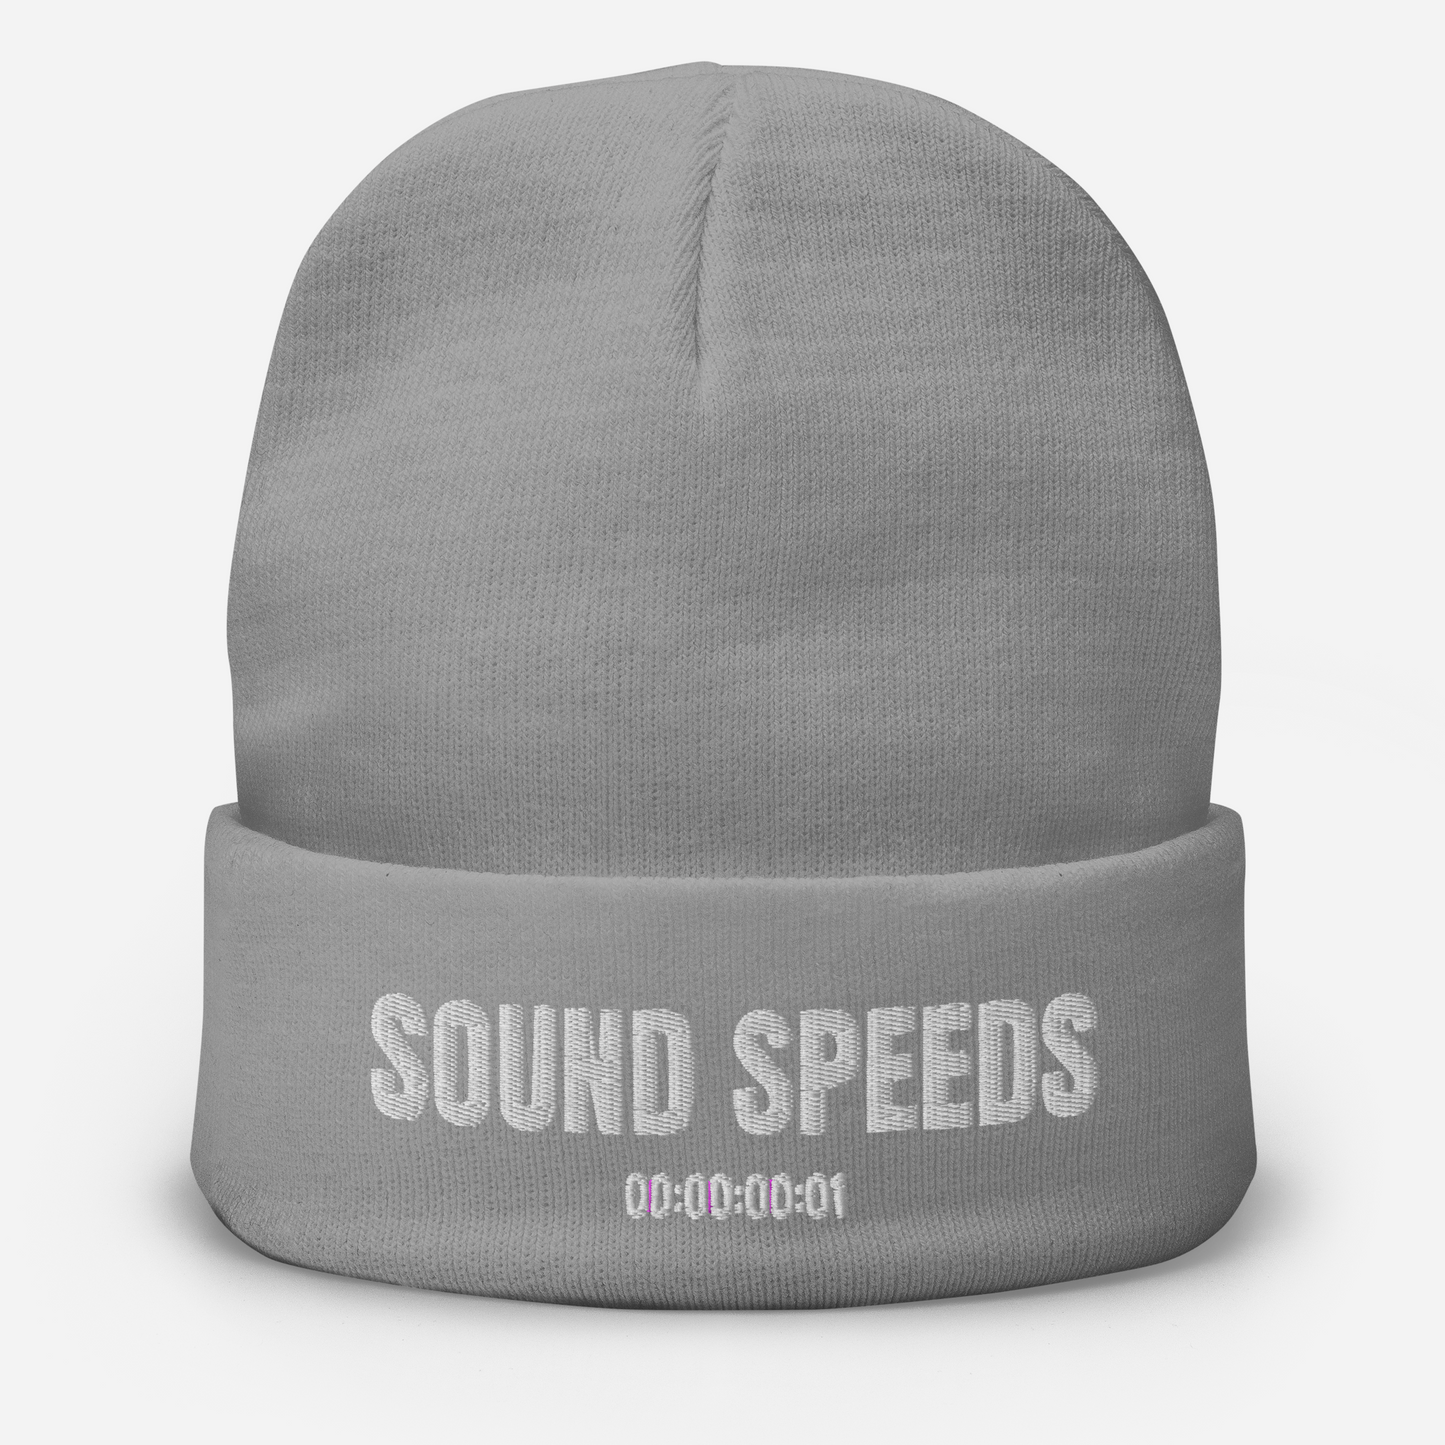 Sound Speeds Embroidered Beanie (Variant A)